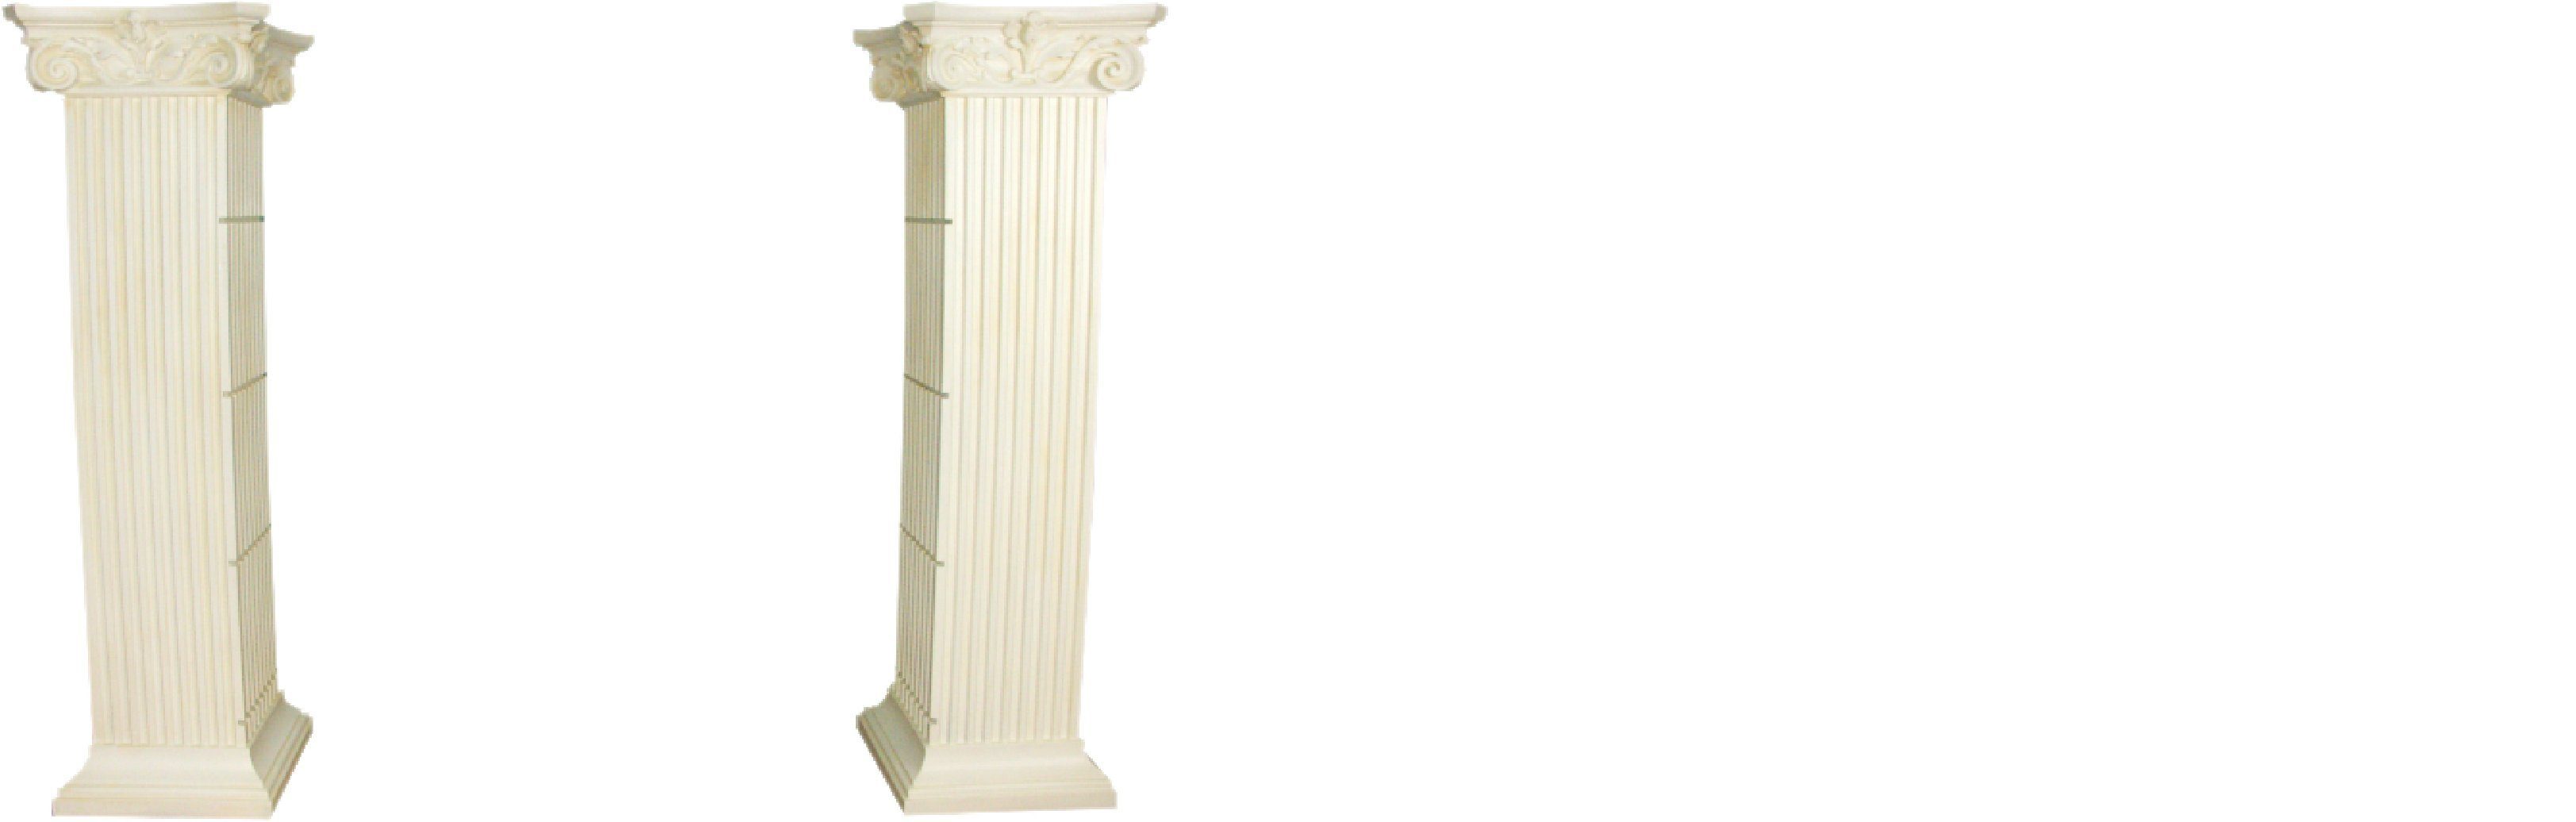 Römische Skulptur Säule Glas Säulen Vitrine JVmoebel Vitrinen Regal XXL Regale 210cm